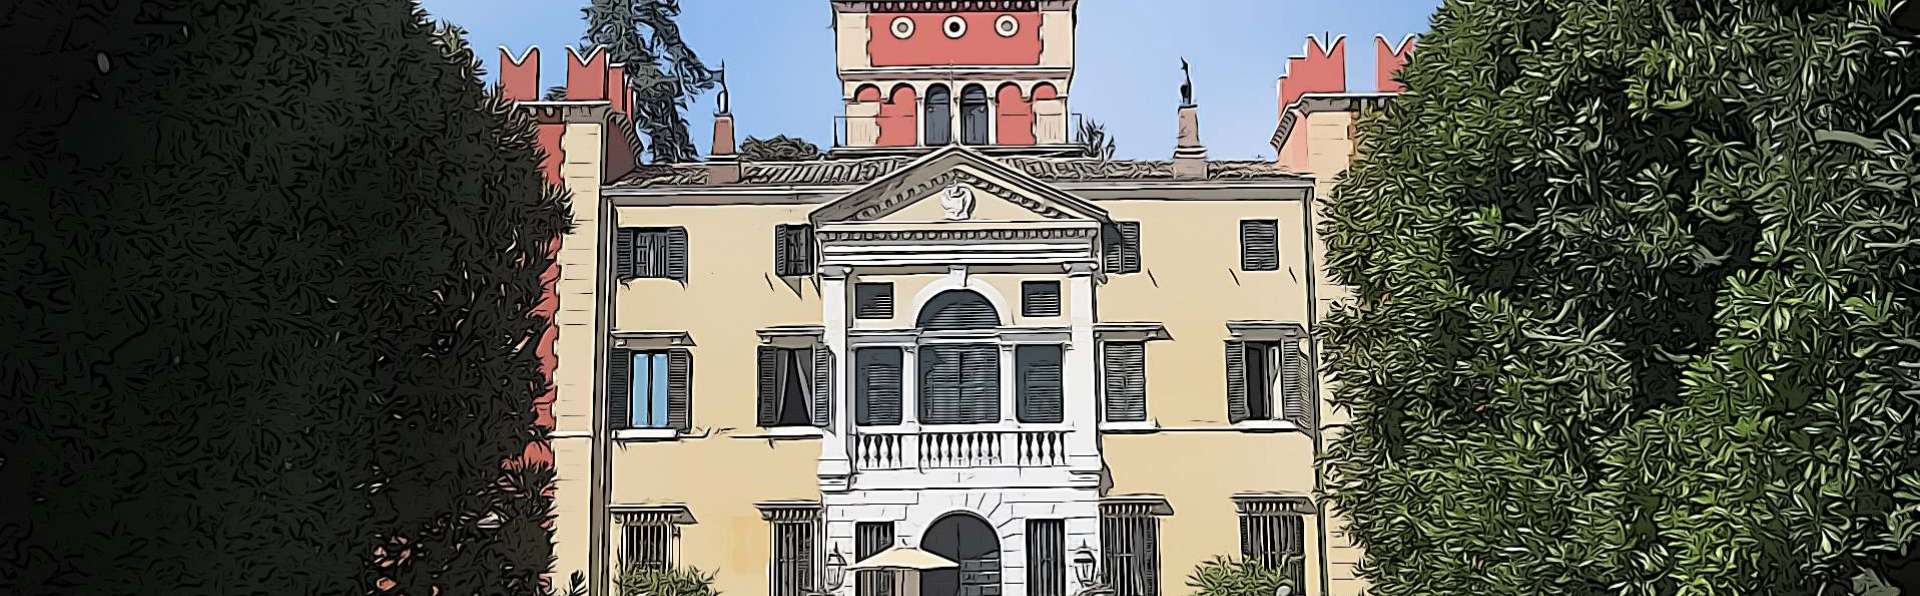 Garda | Villa Albertini and Villa Carlotti Canossa